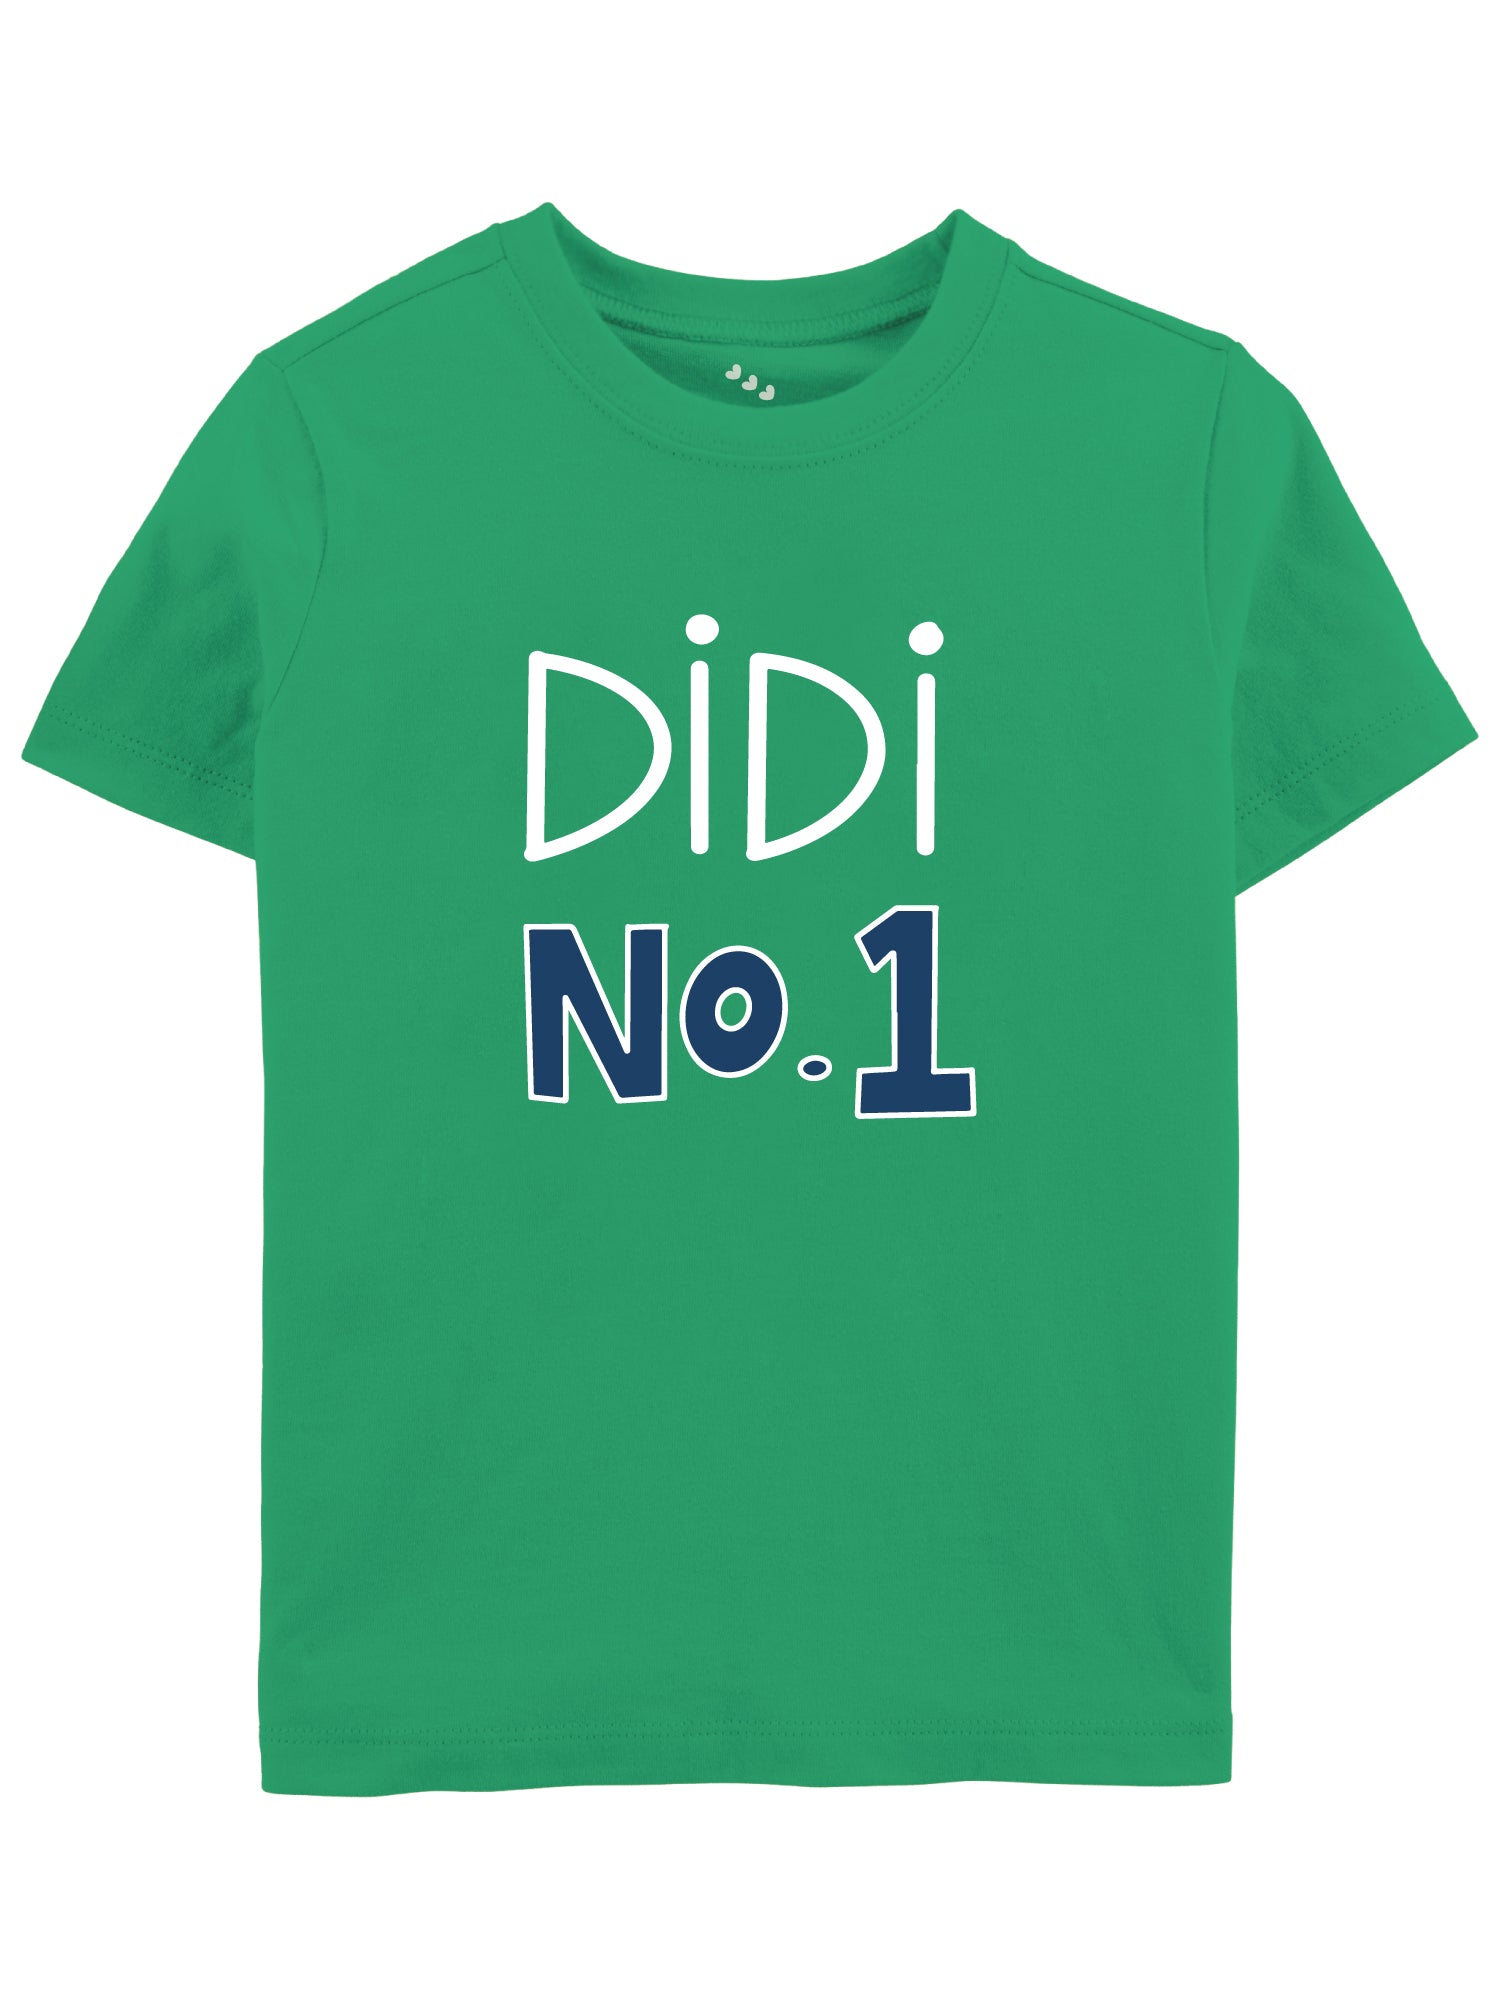 Didi No 1 - Tshirt